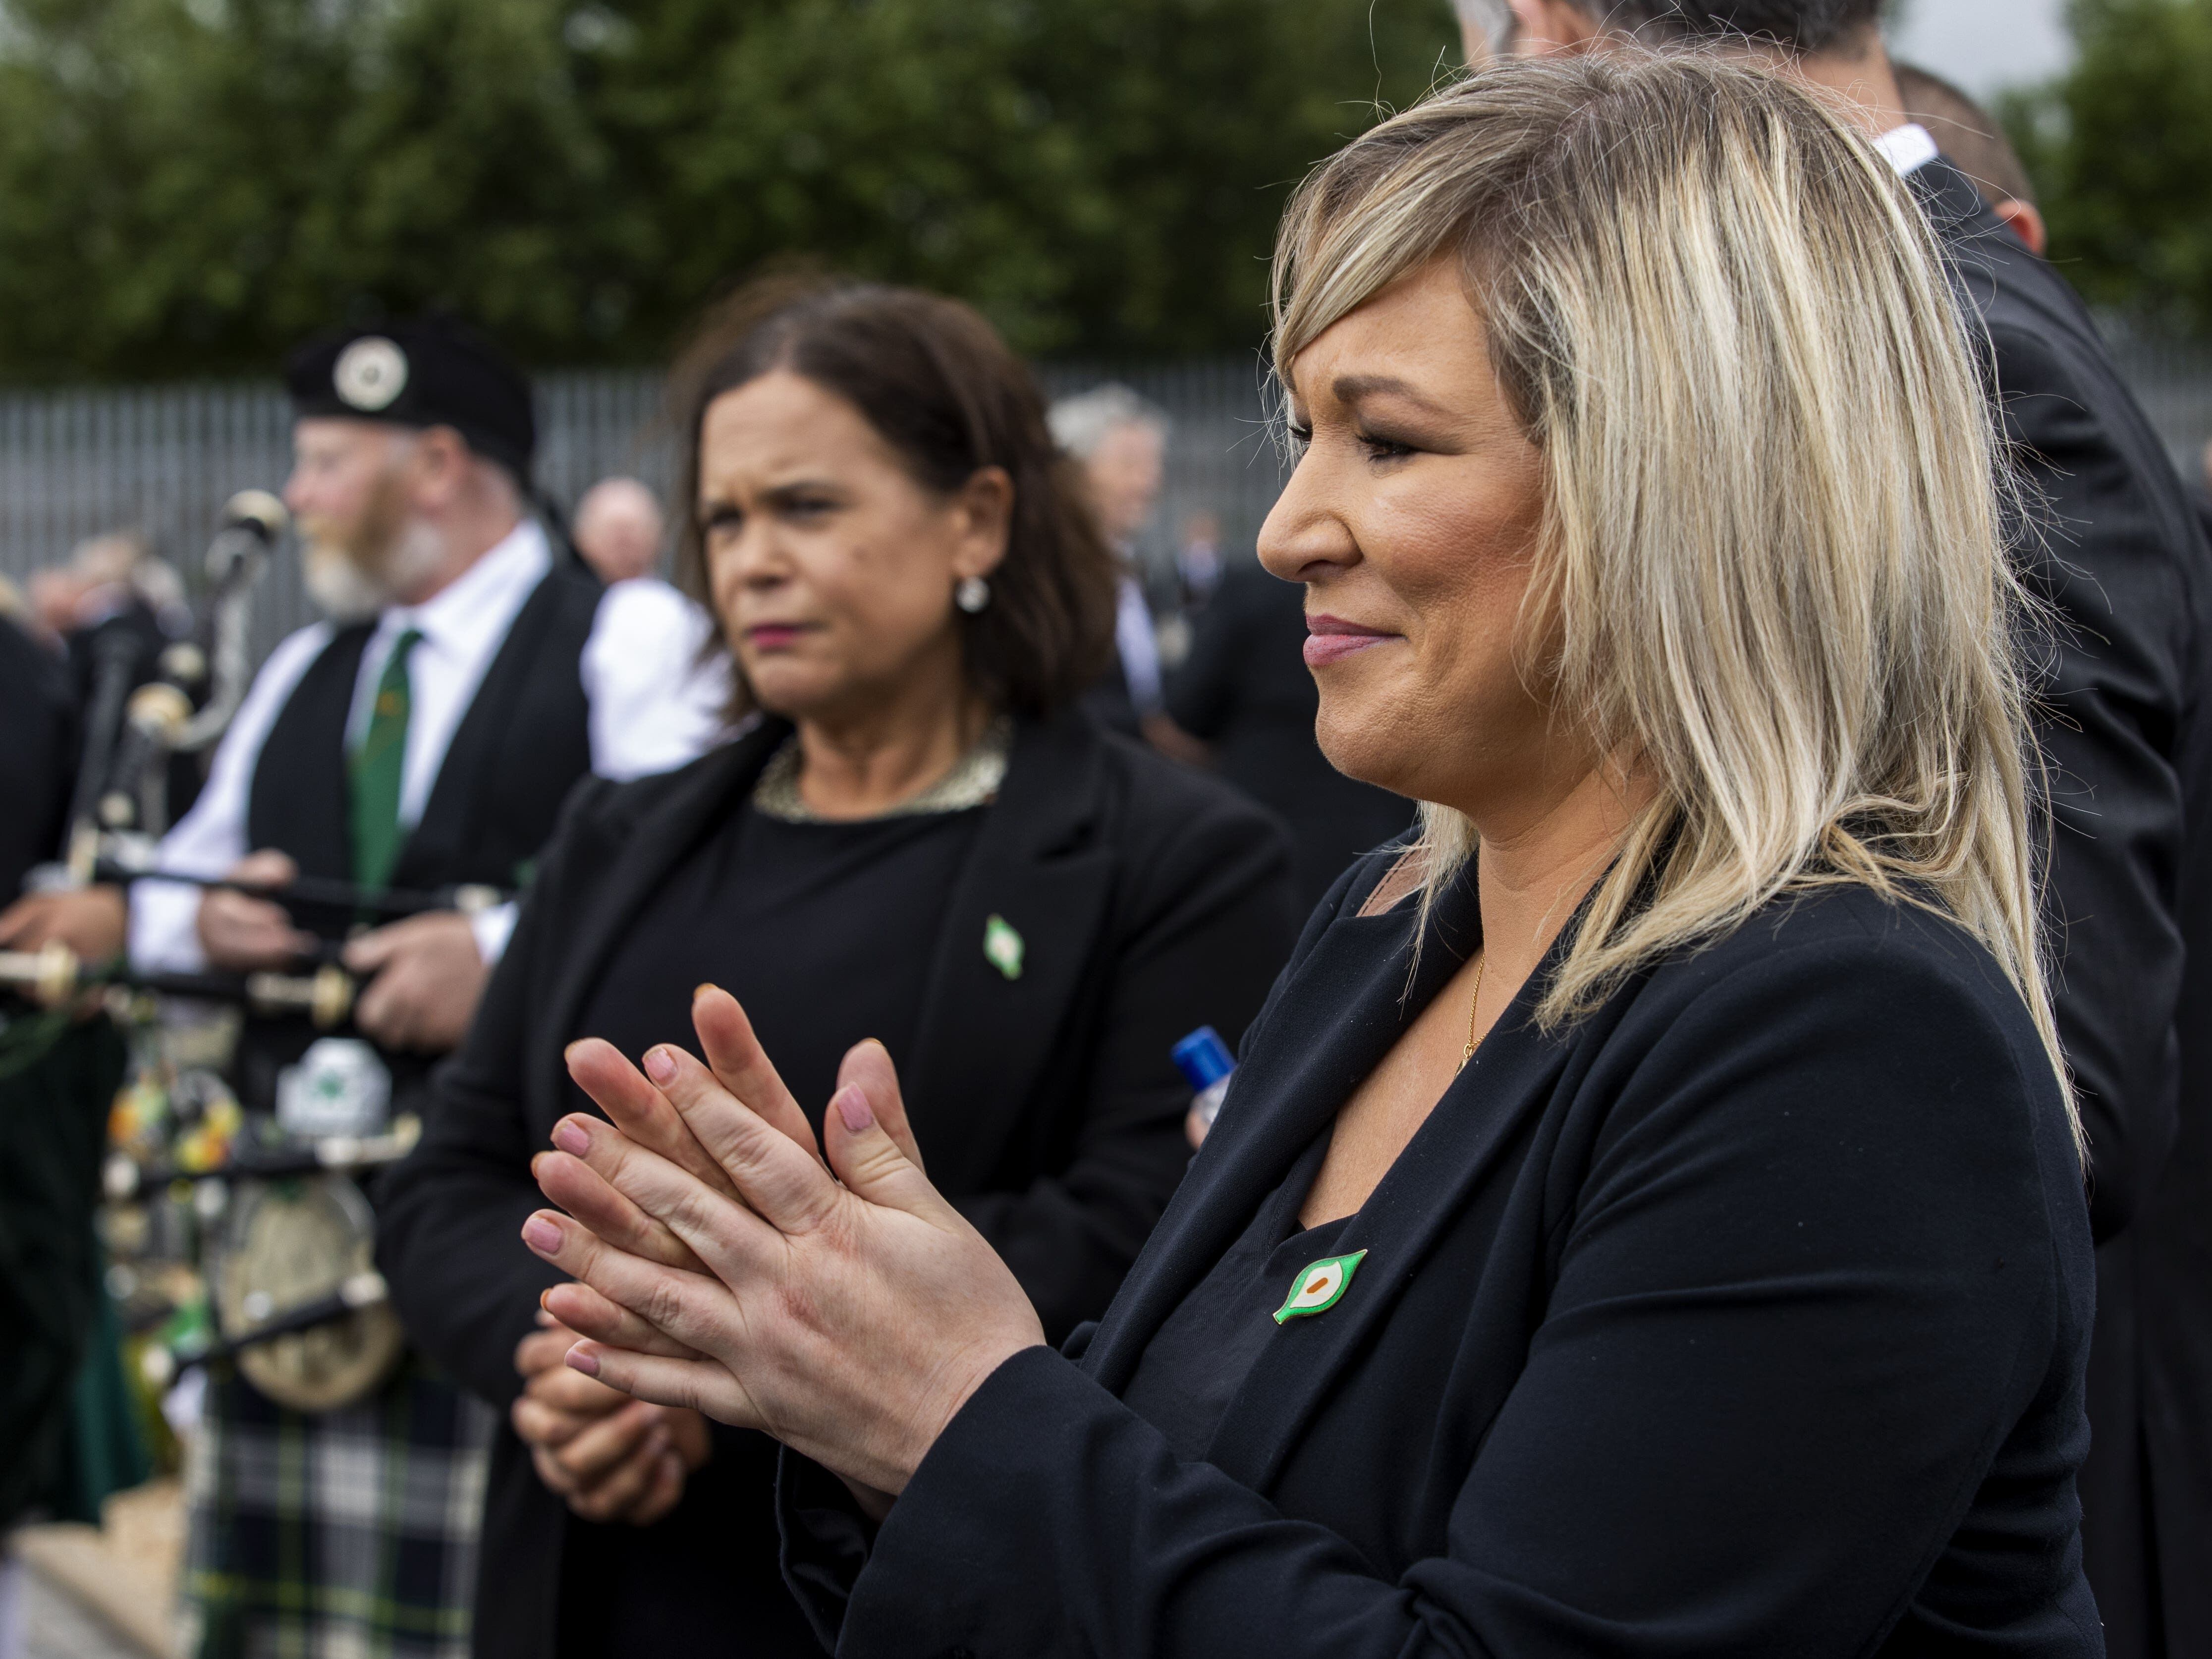 Storey funeral had potential to undermine public health message – McBride